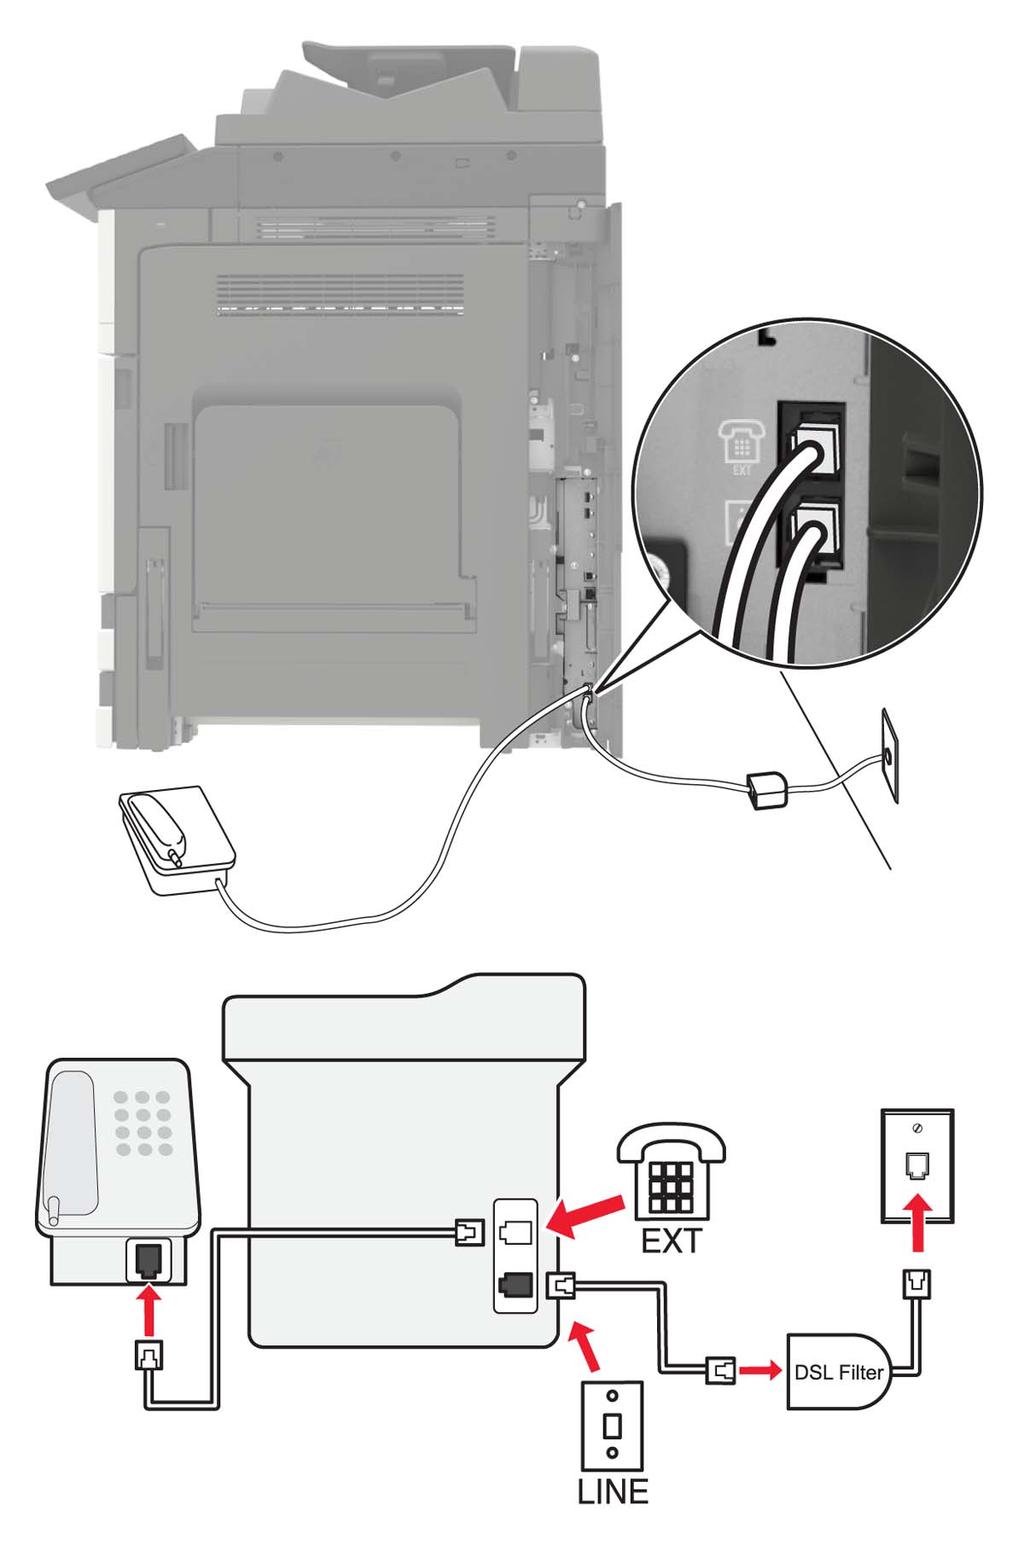 faks 44 Konfigurere faks ved hjelp av DSL FORSIKTIG FARE FOR STØT: Ikke installer dette produktet eller utfør noe elektrisk arbeid med tilkoblinger, for eksempel strømledningen, faksfunksjonen eller